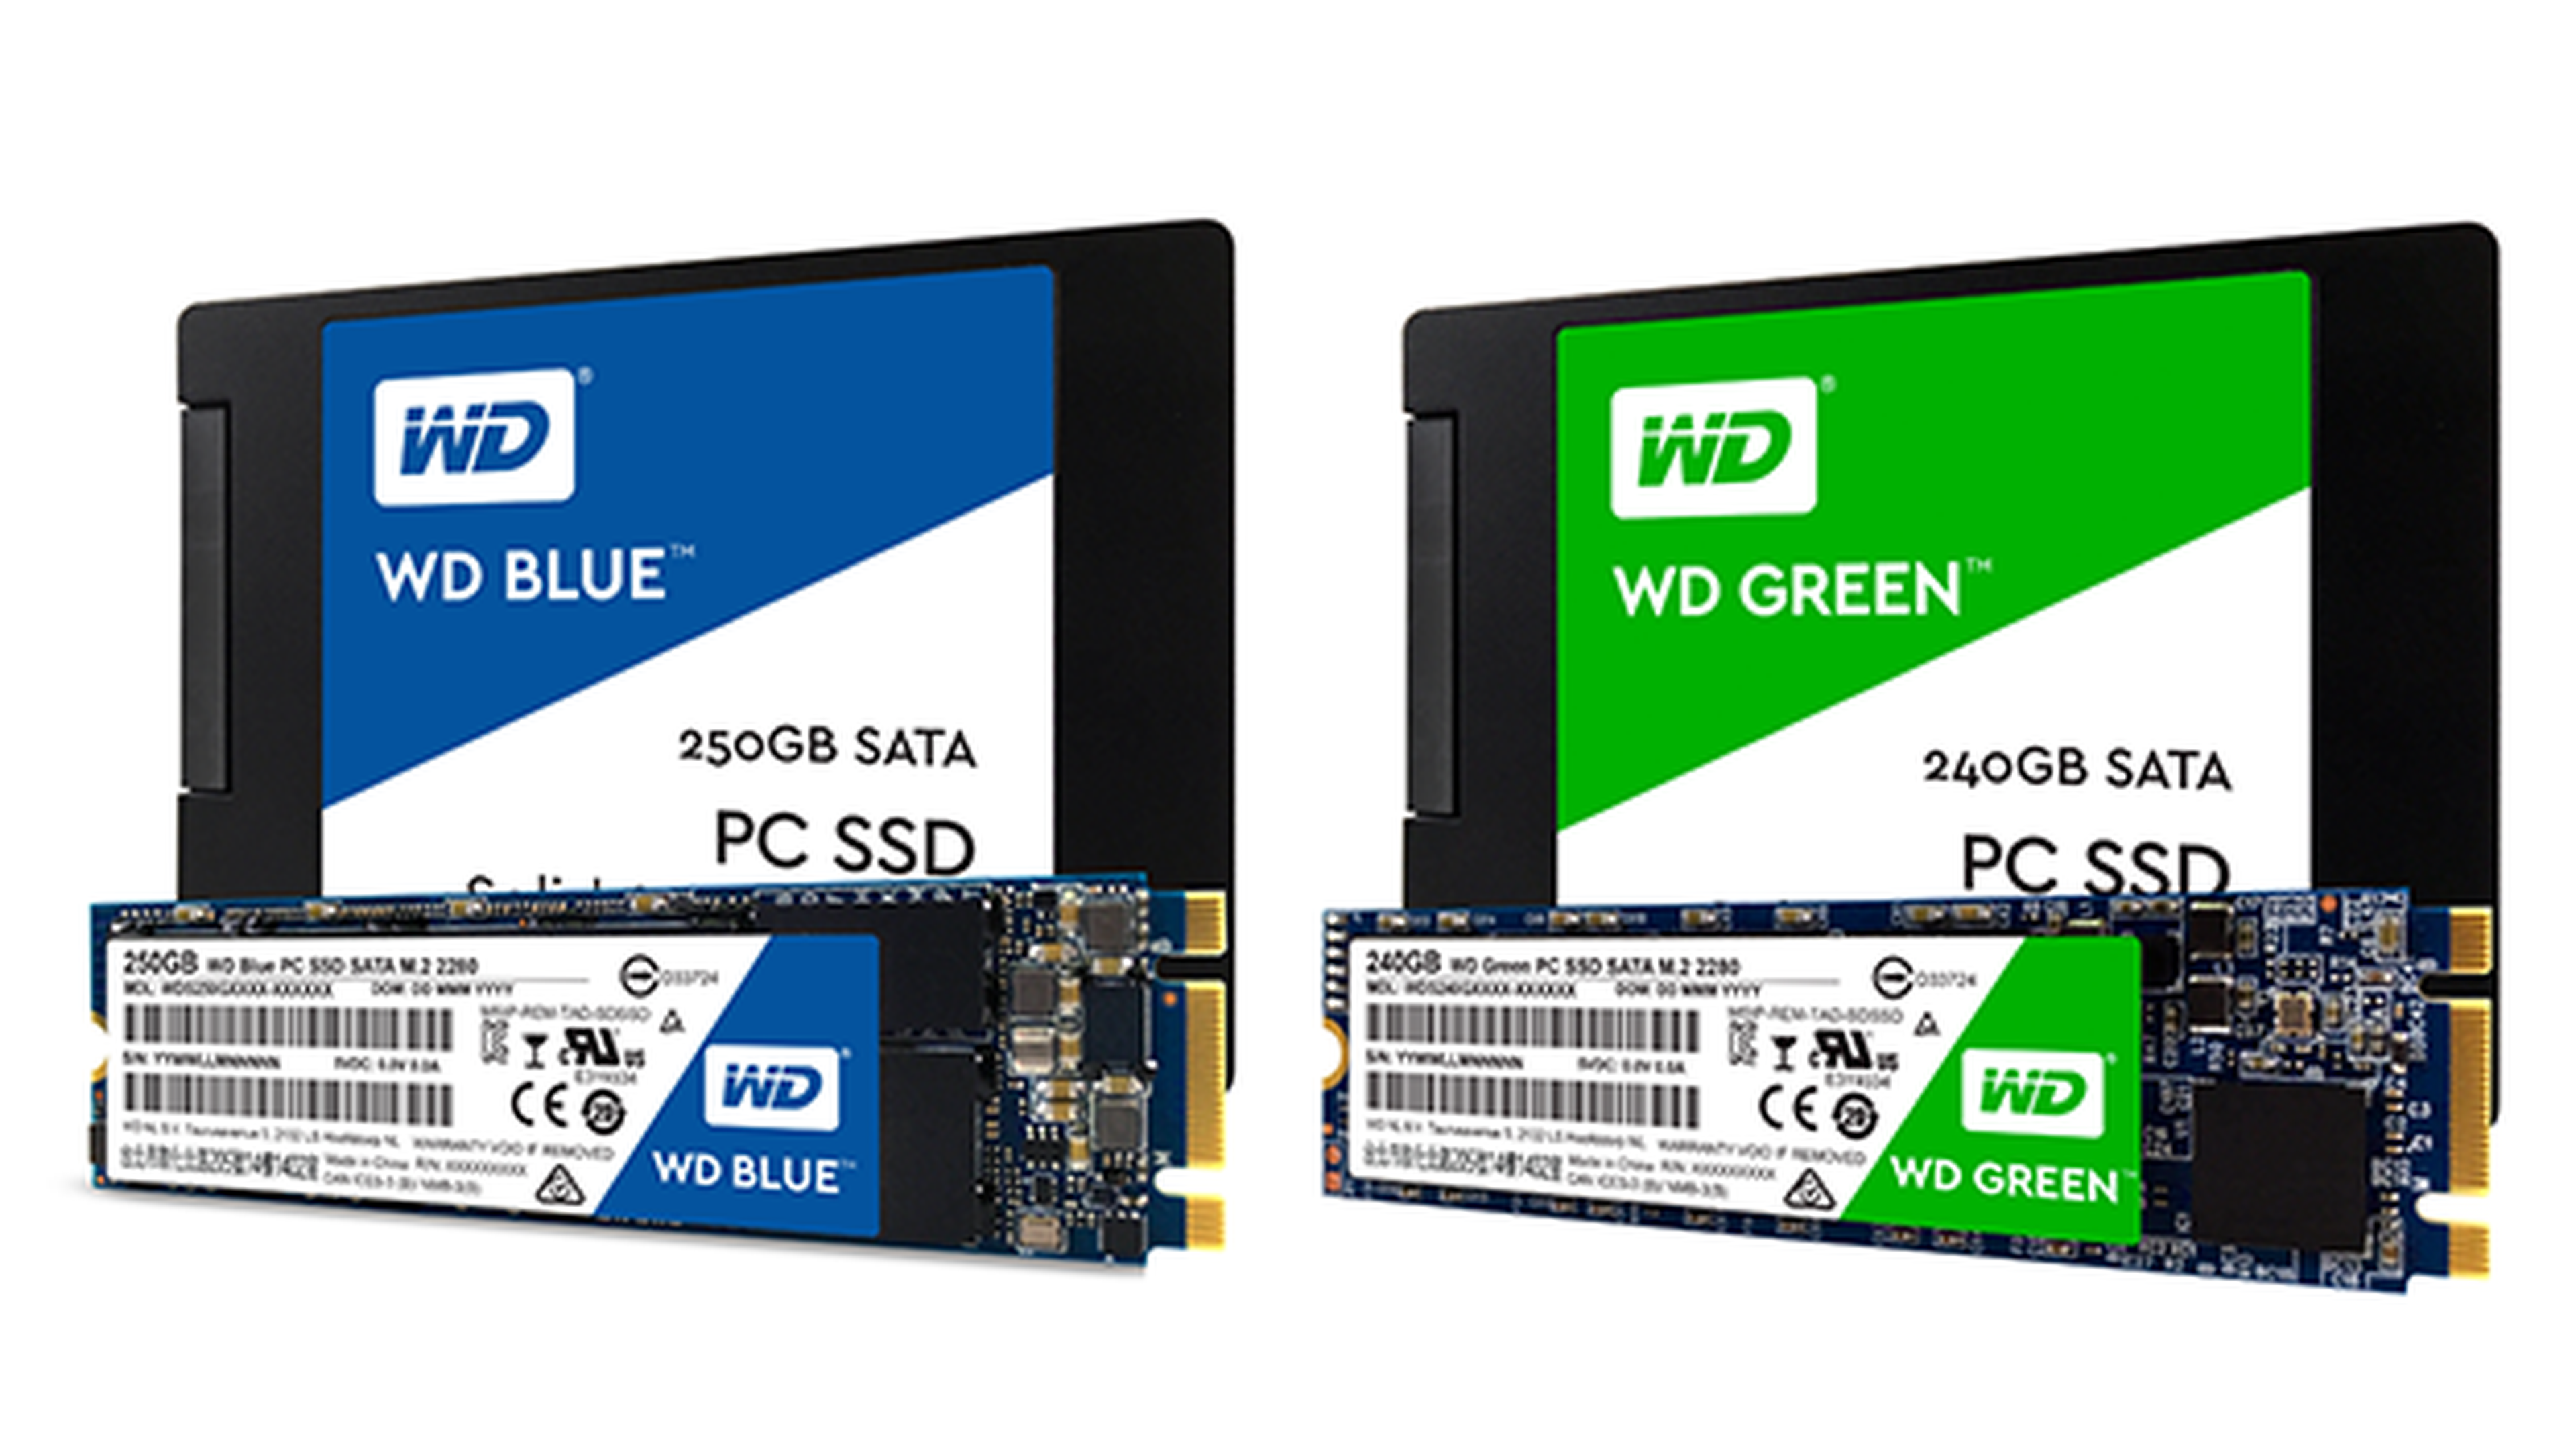 WD presentan sus nuevos SSD WD Blue y WD Green